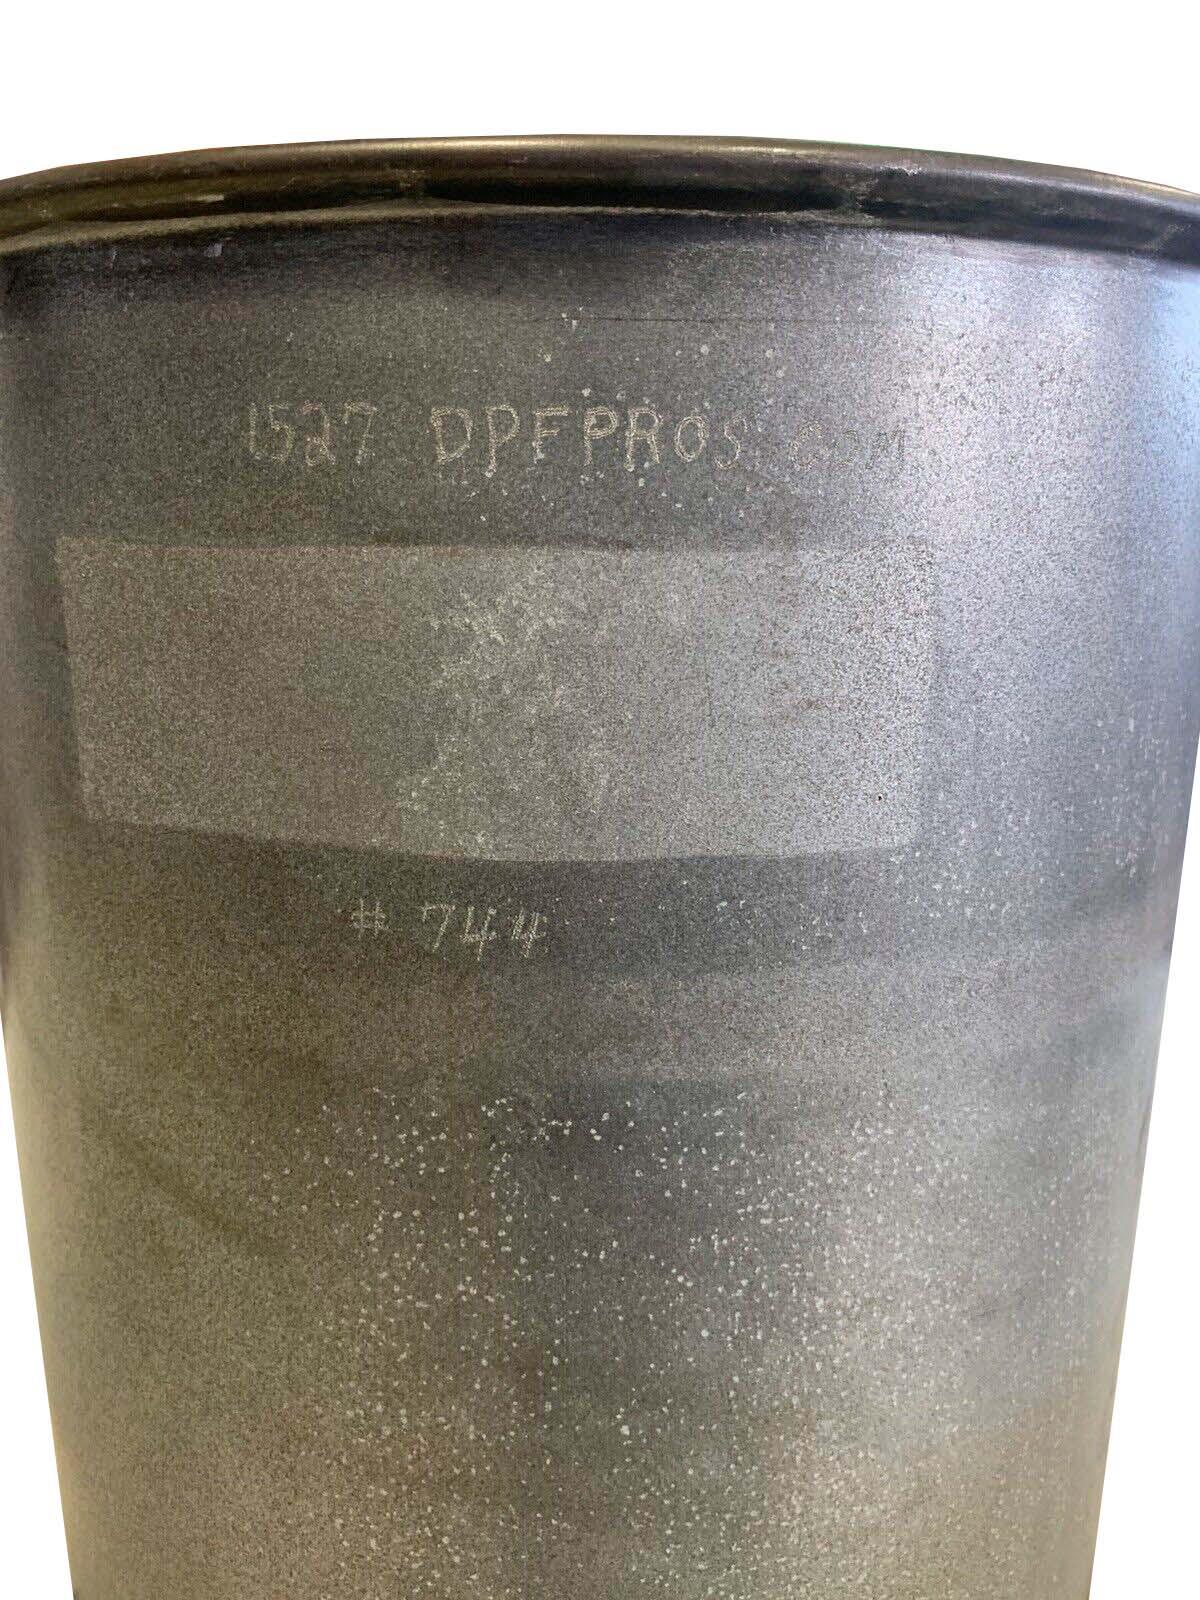 5010845R1 Genuine International DPF Diesel Particulate Filter - ADVANCED TRUCK PARTS